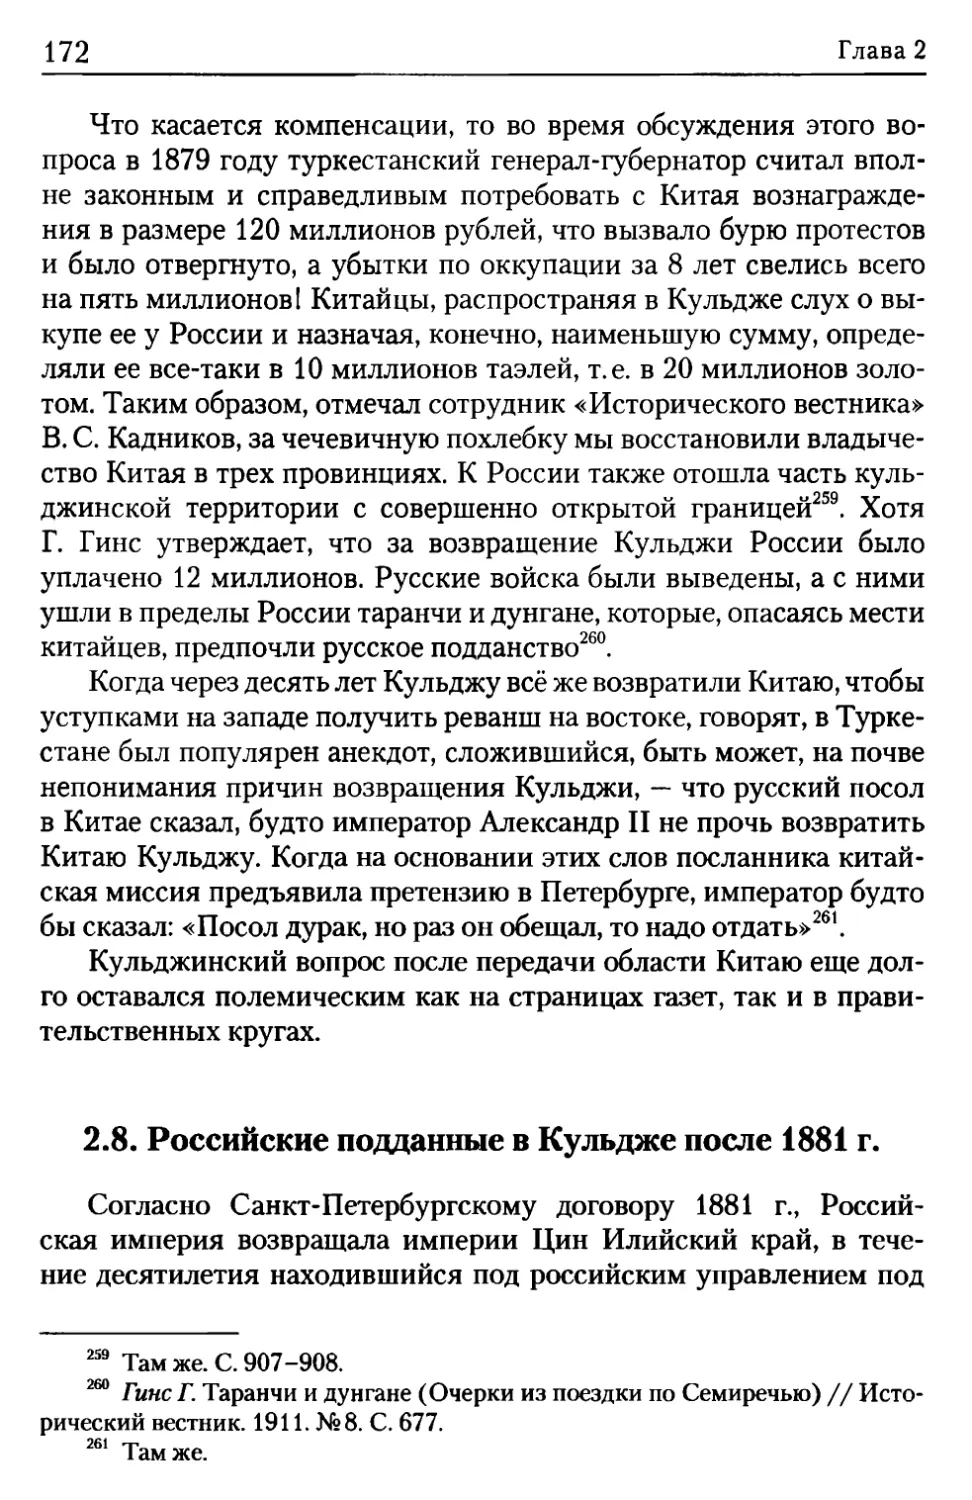 2.8. Российские подданные в Кульдже после 1881 г